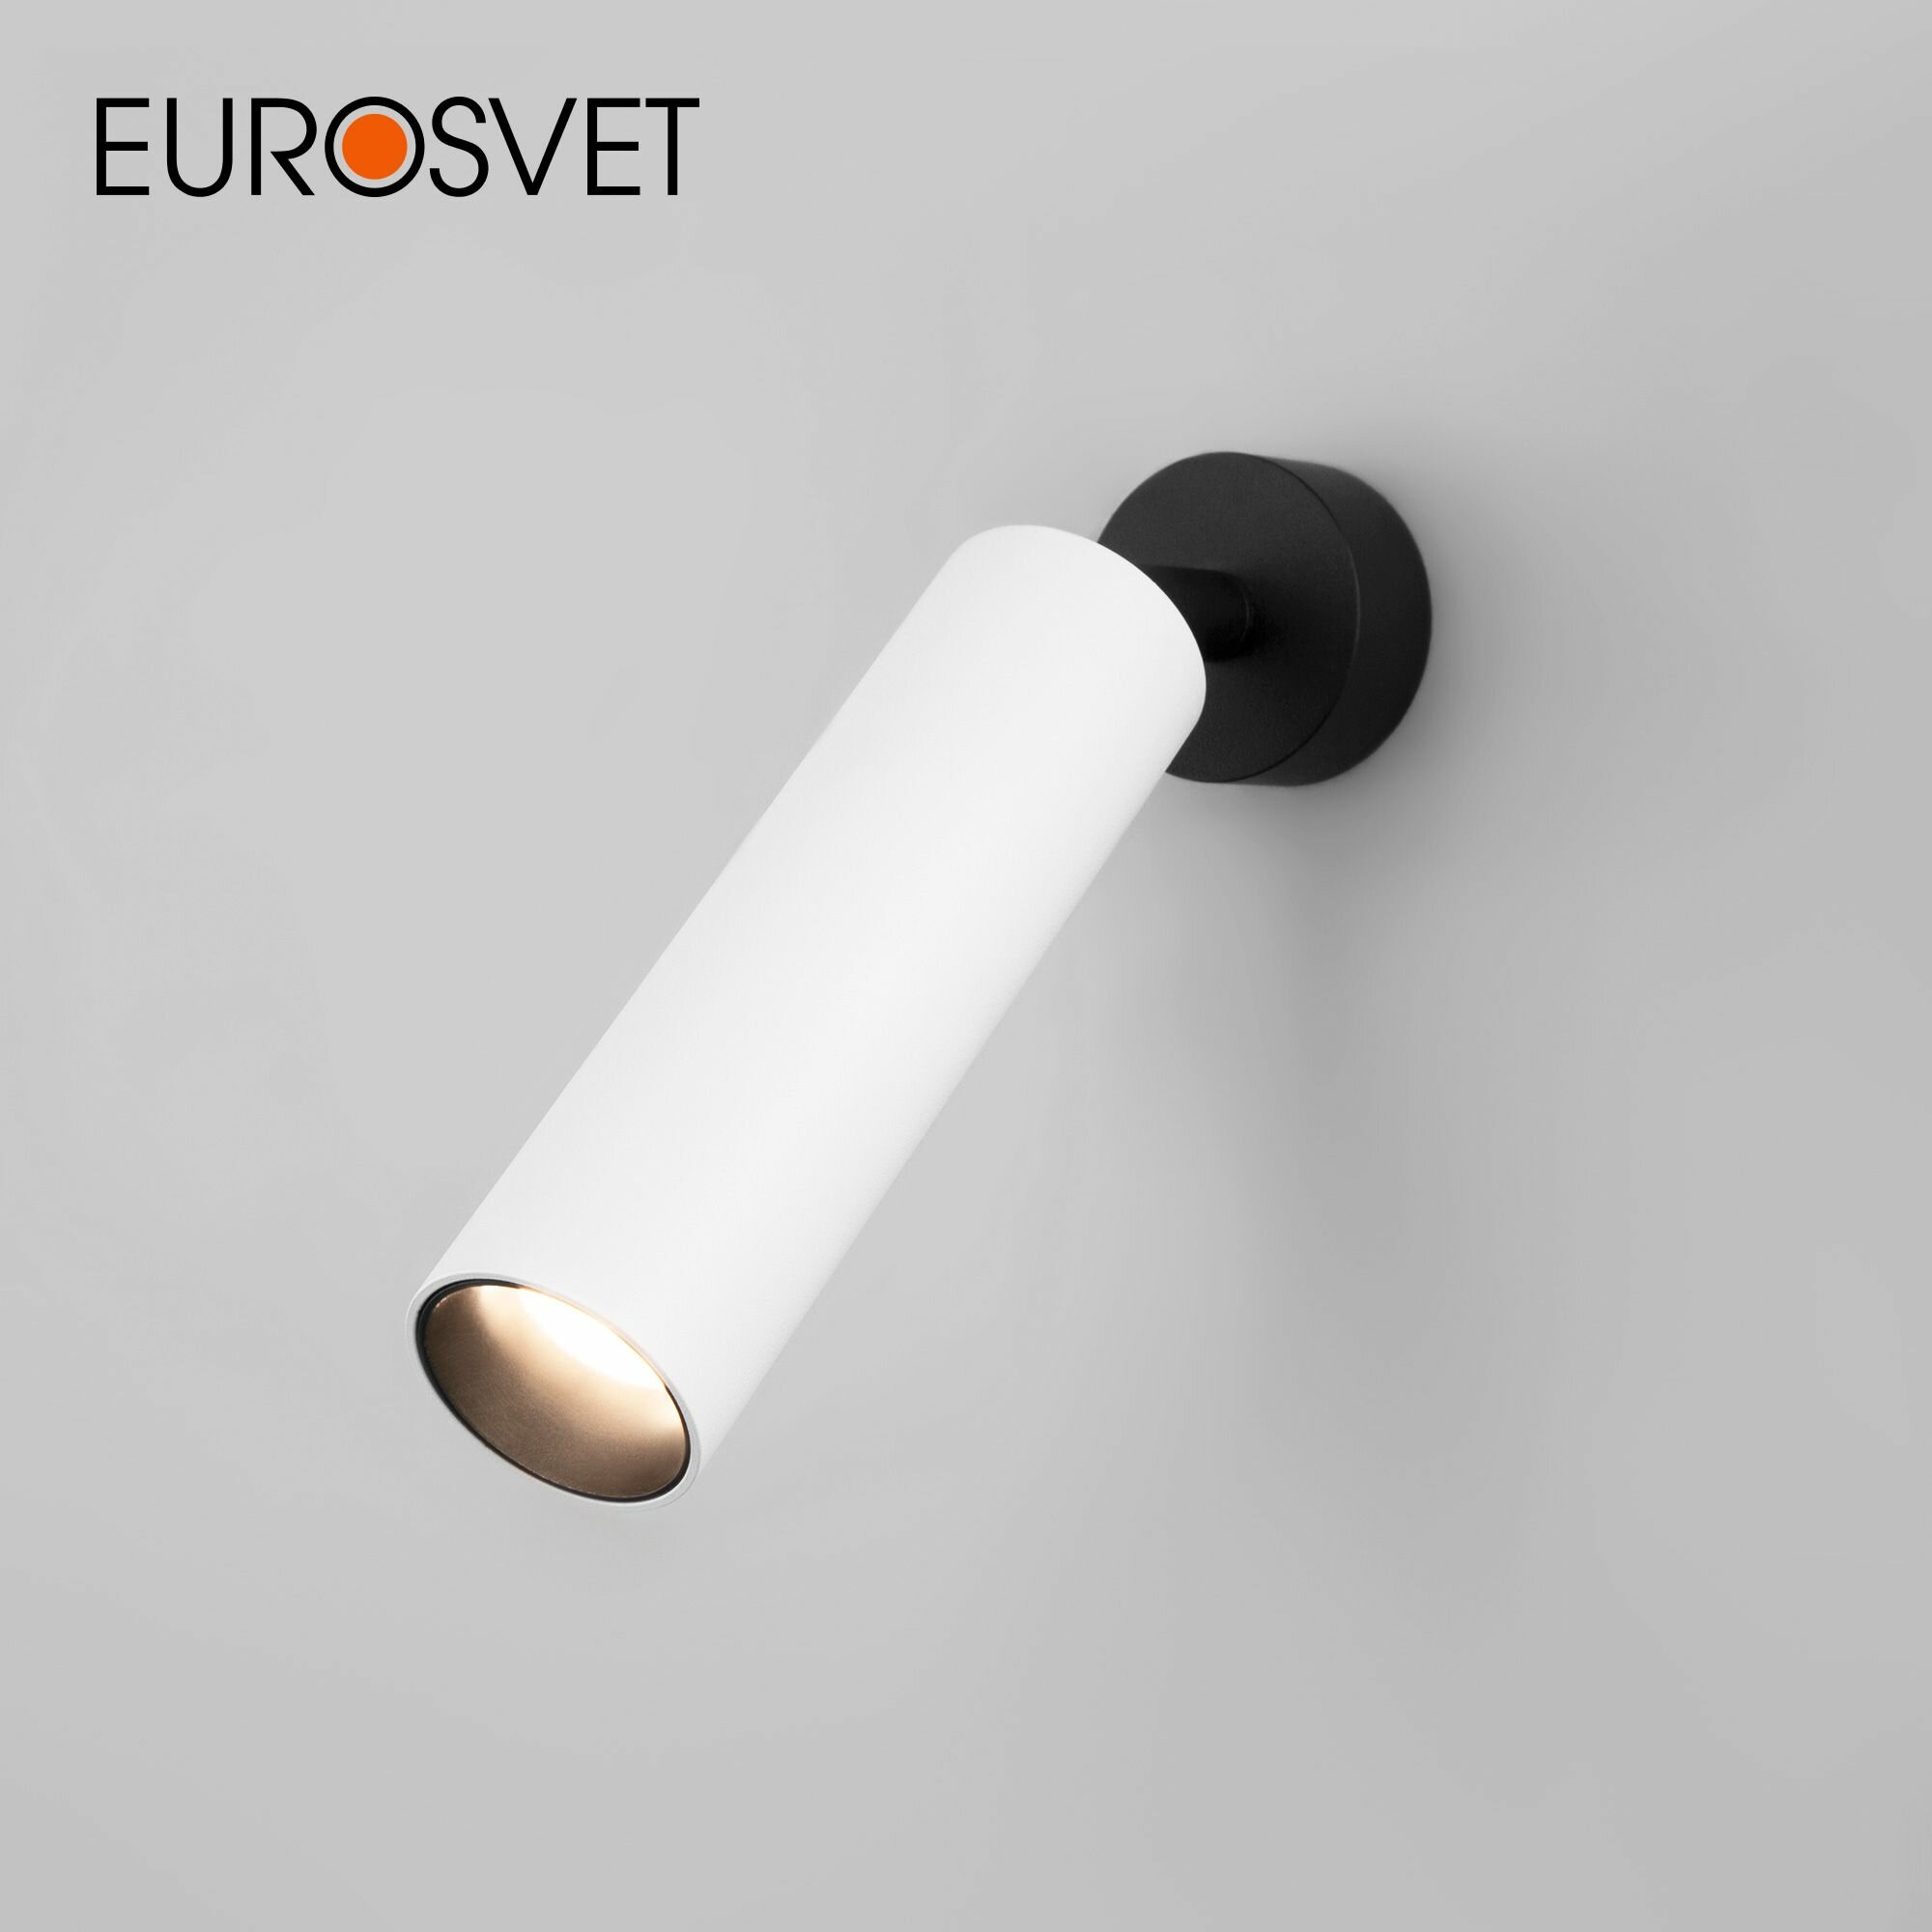 Спот / Настенный светодиодный светильник с поворотным плафоном Eurosvet Ease 20128/1 LED, 8 Вт, 4200 К, цвет белый / черный